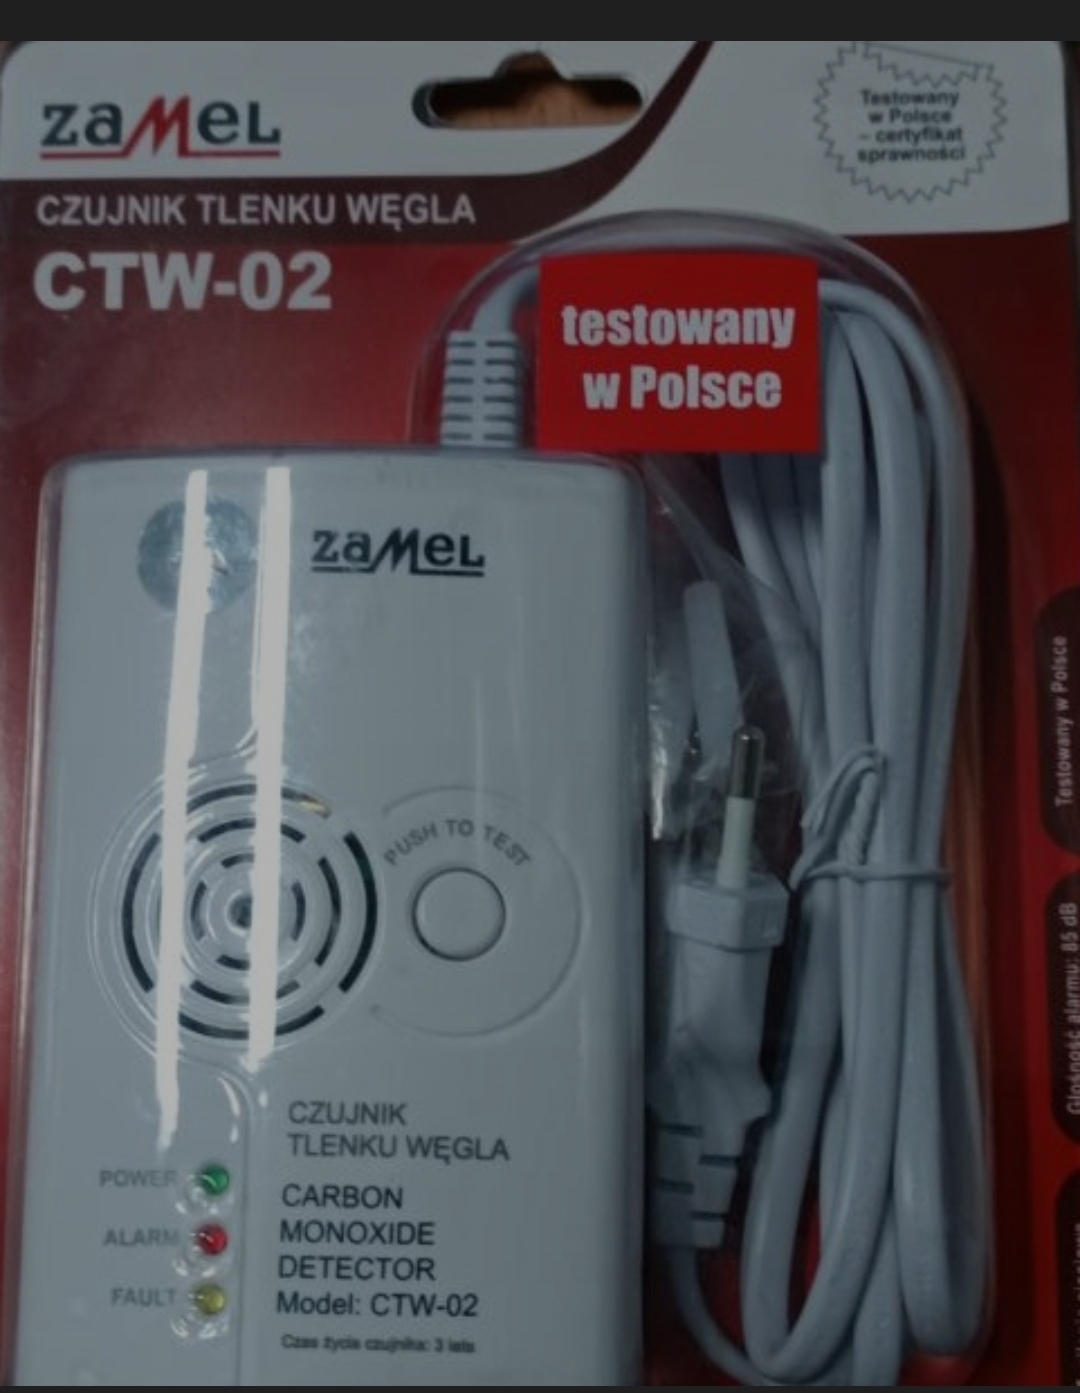 Czujnik dymu Zamel CTW-02 alarm dźwiękowy, alarm świetlny